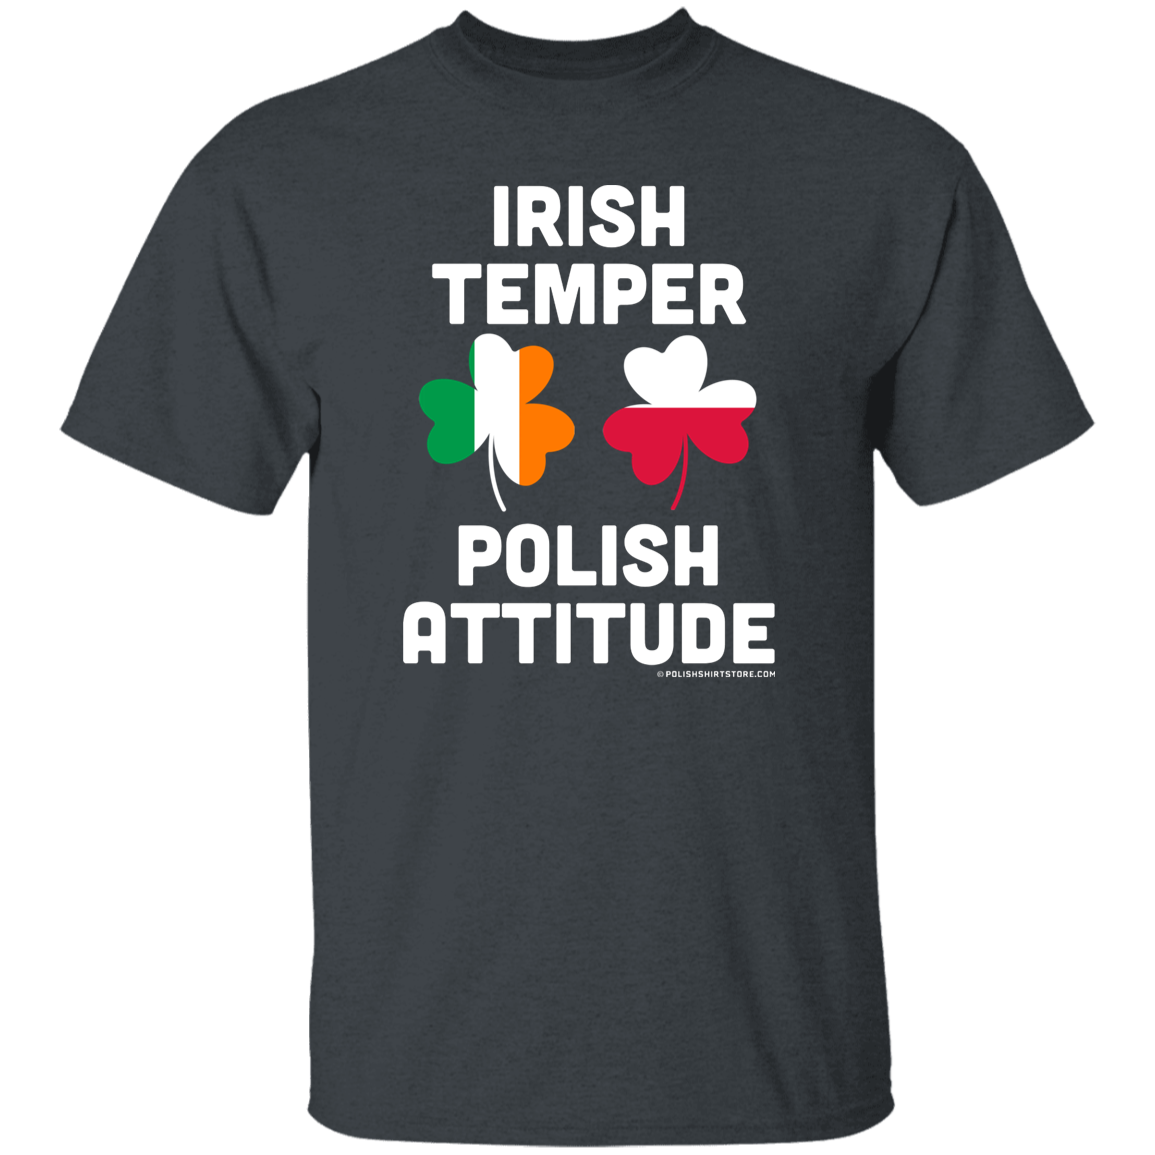 Irish Temper Polish Attitude Apparel CustomCat G500 5.3 oz. T-Shirt Dark Heather S